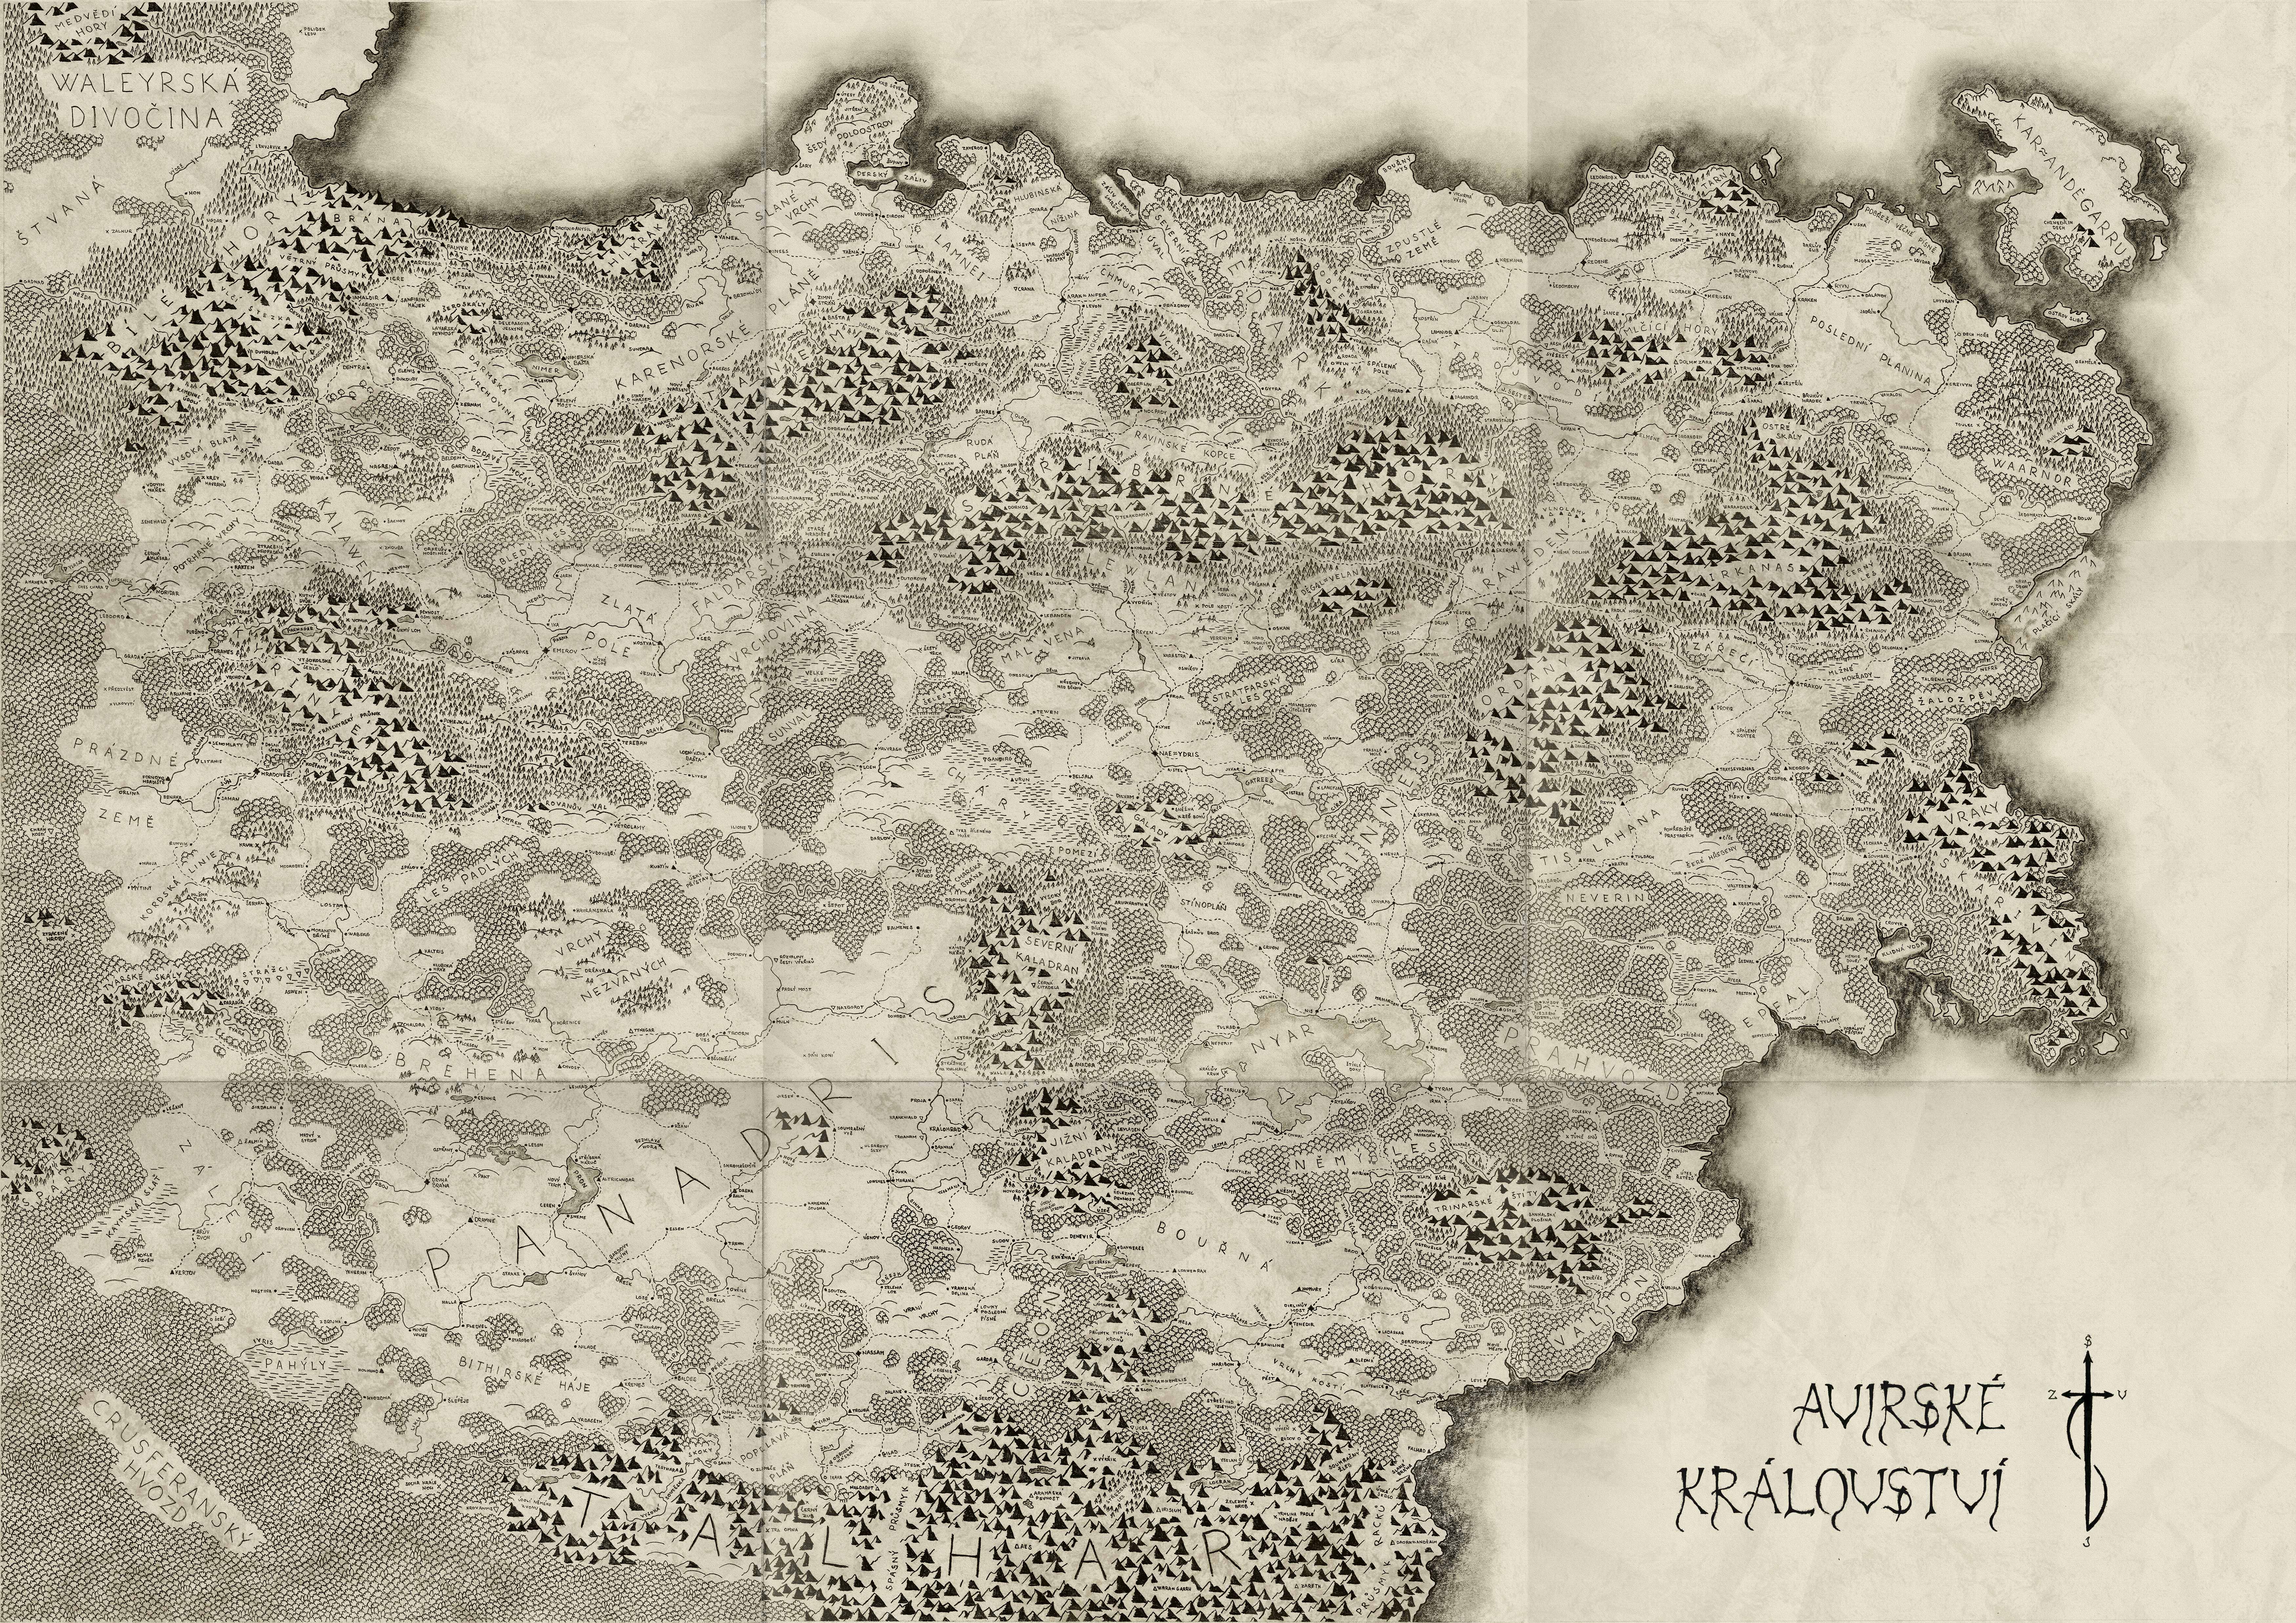 Mapa Avirského království